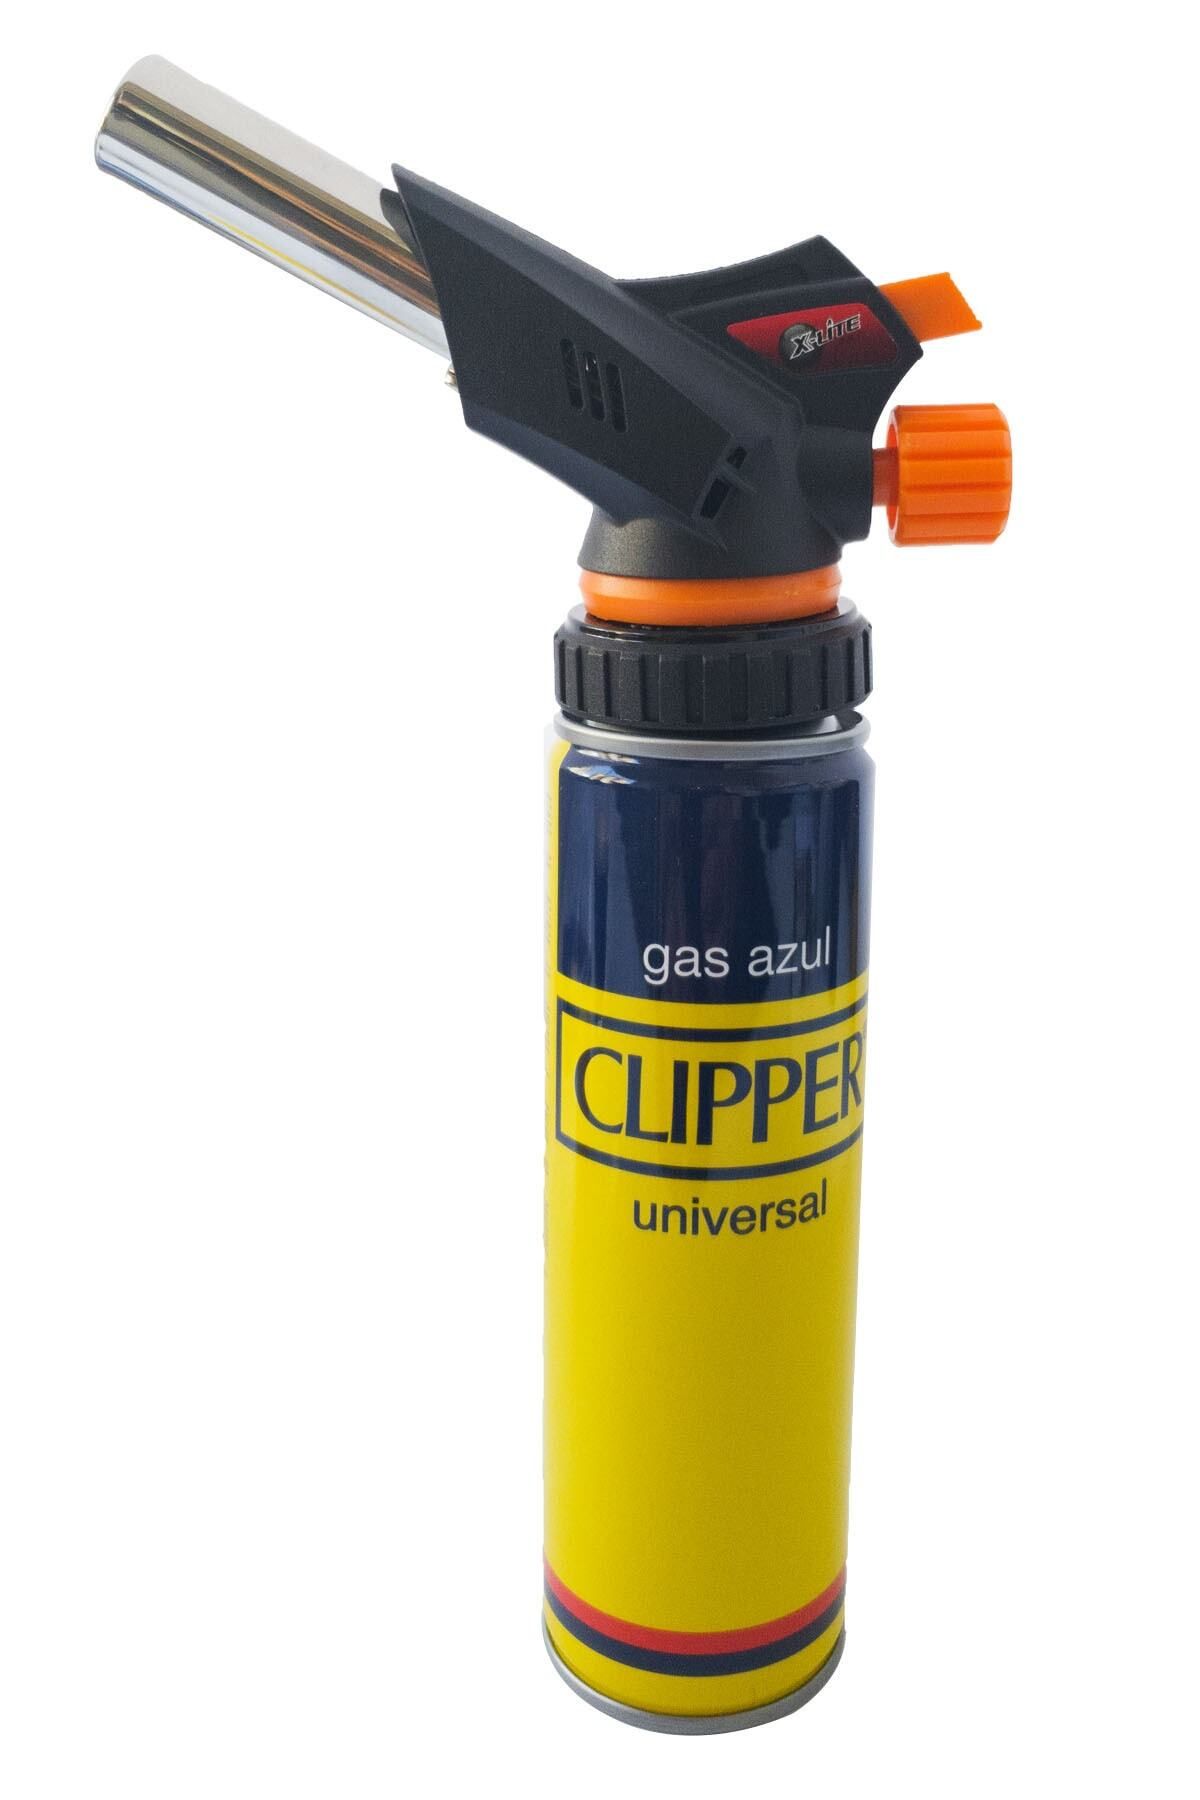 Clipper Firebird Büyük Pürmüz Başlıgı Lpg Kartuş Ve Normal Çakmak Gaz Hediyeli